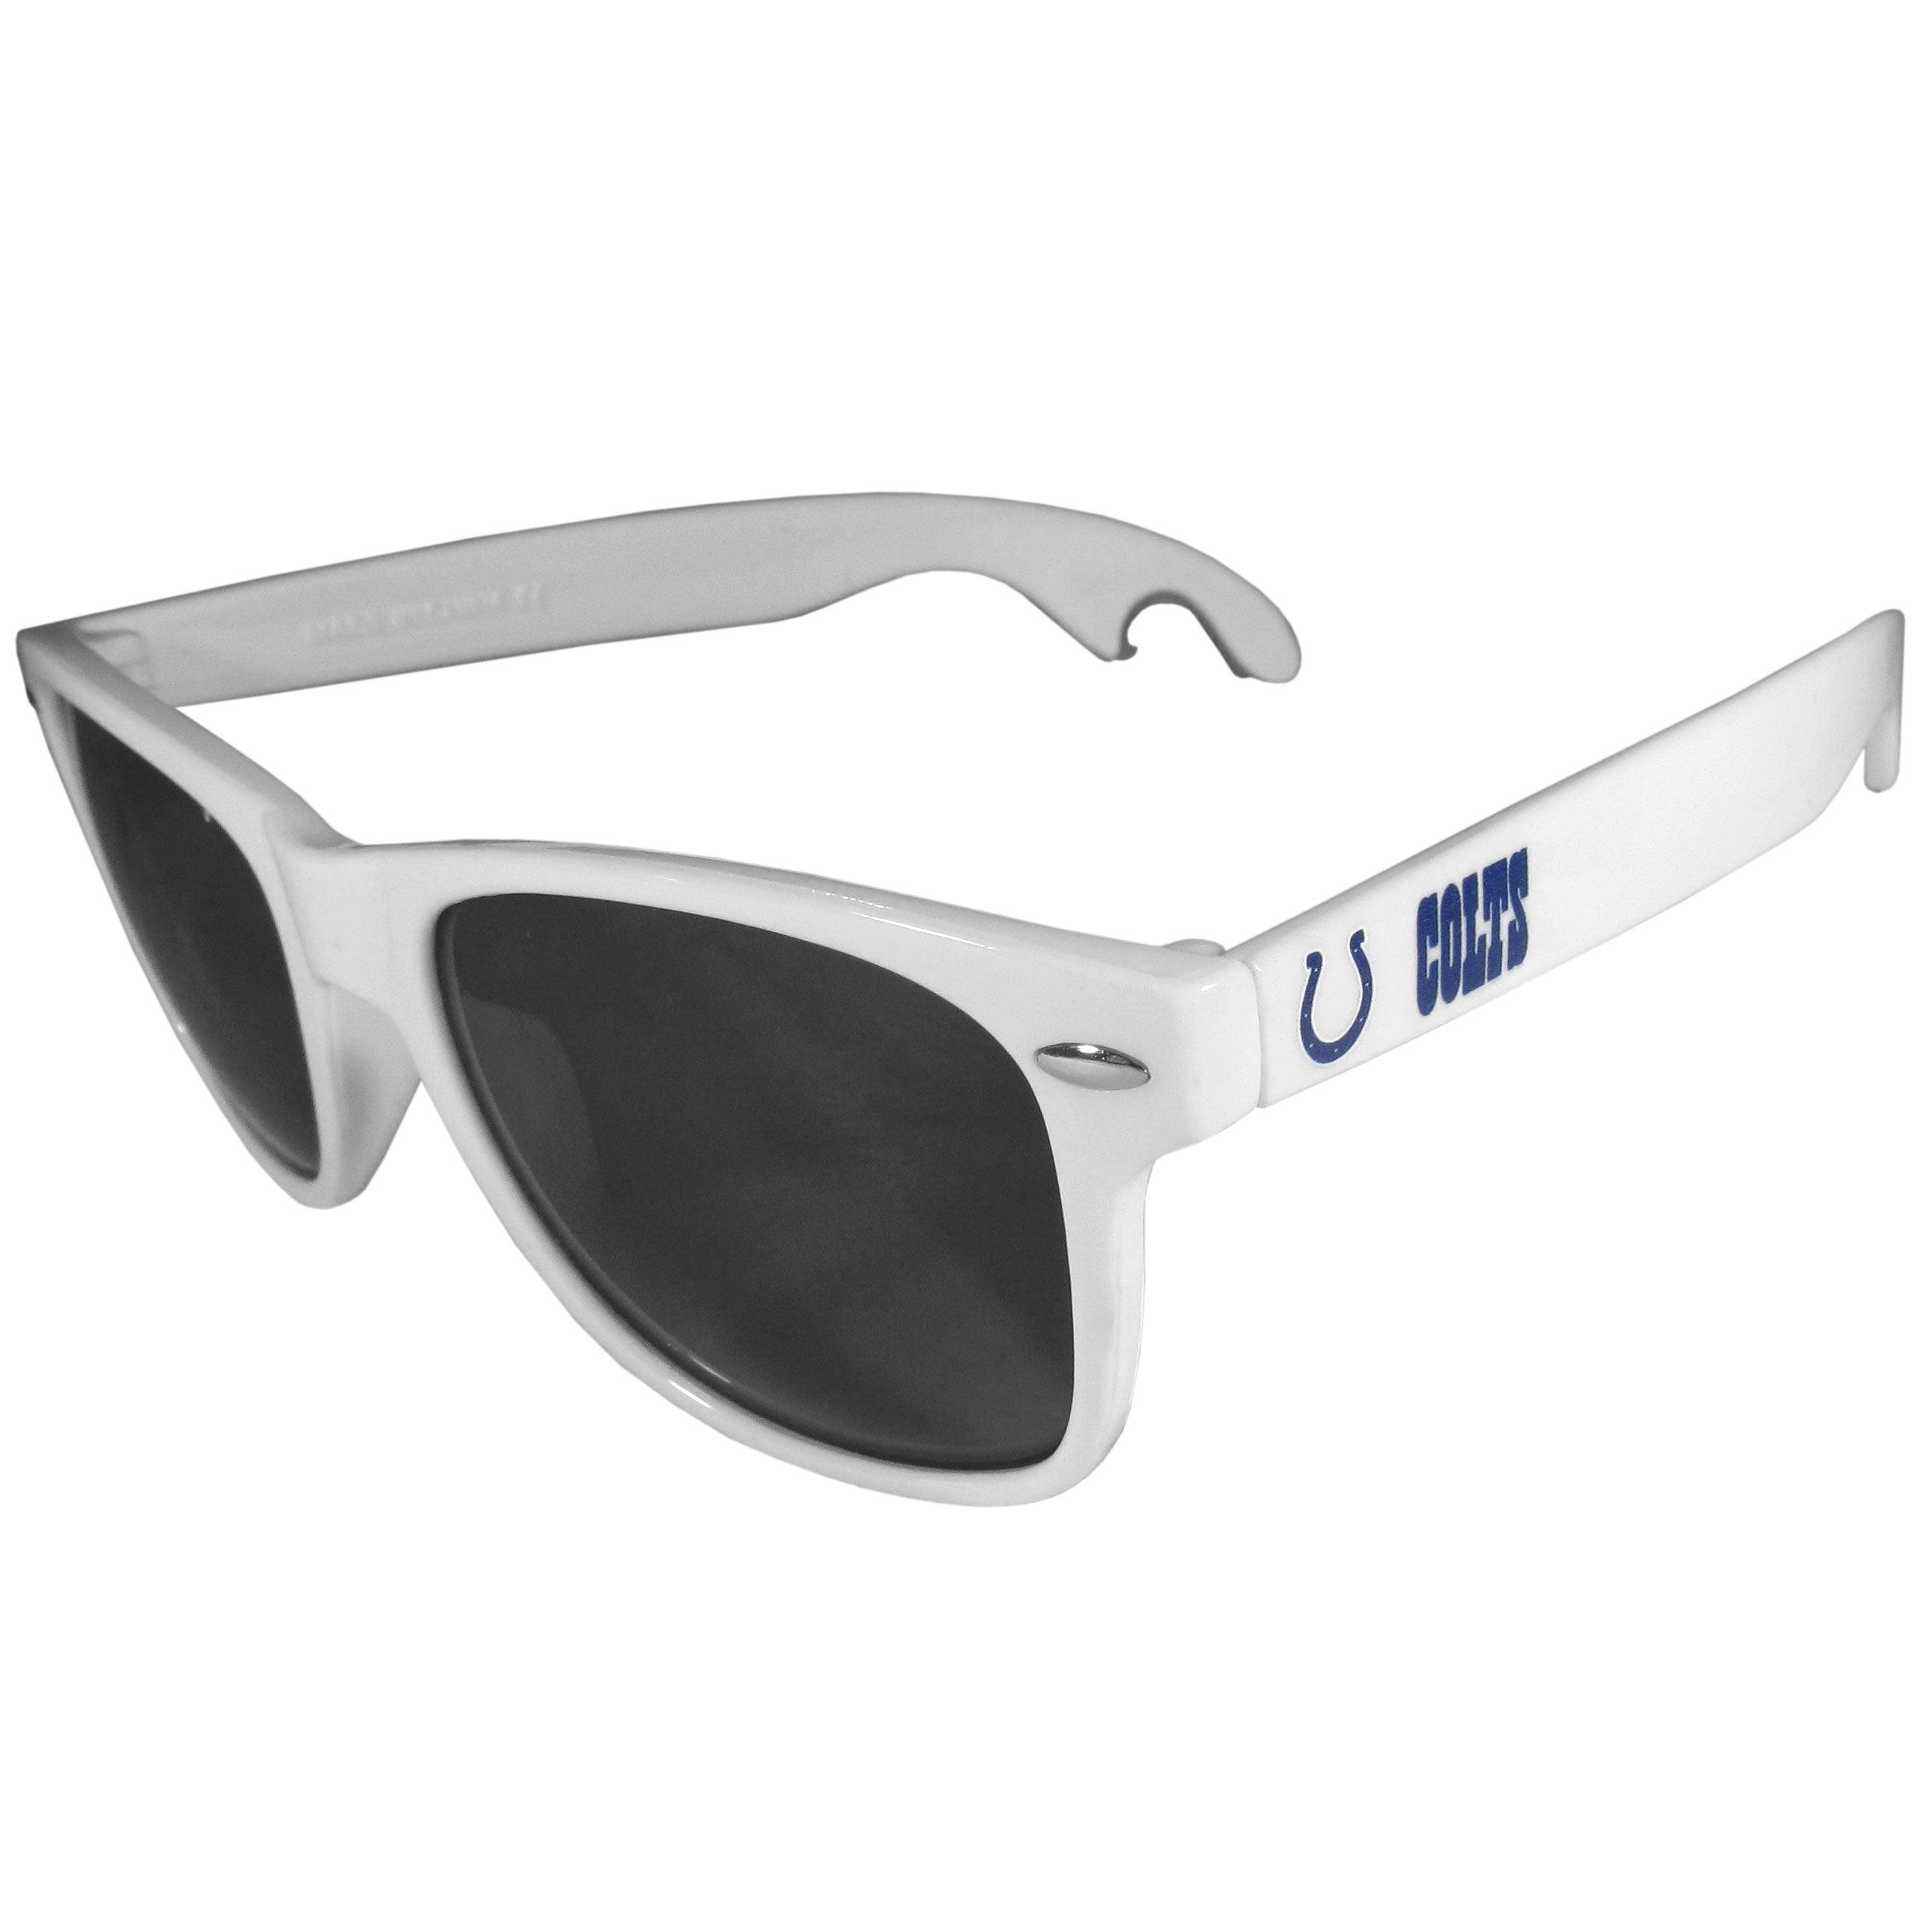 Indianapolis Colts Beachfarer Bottle Opener Sunglasses, White - Flyclothing LLC